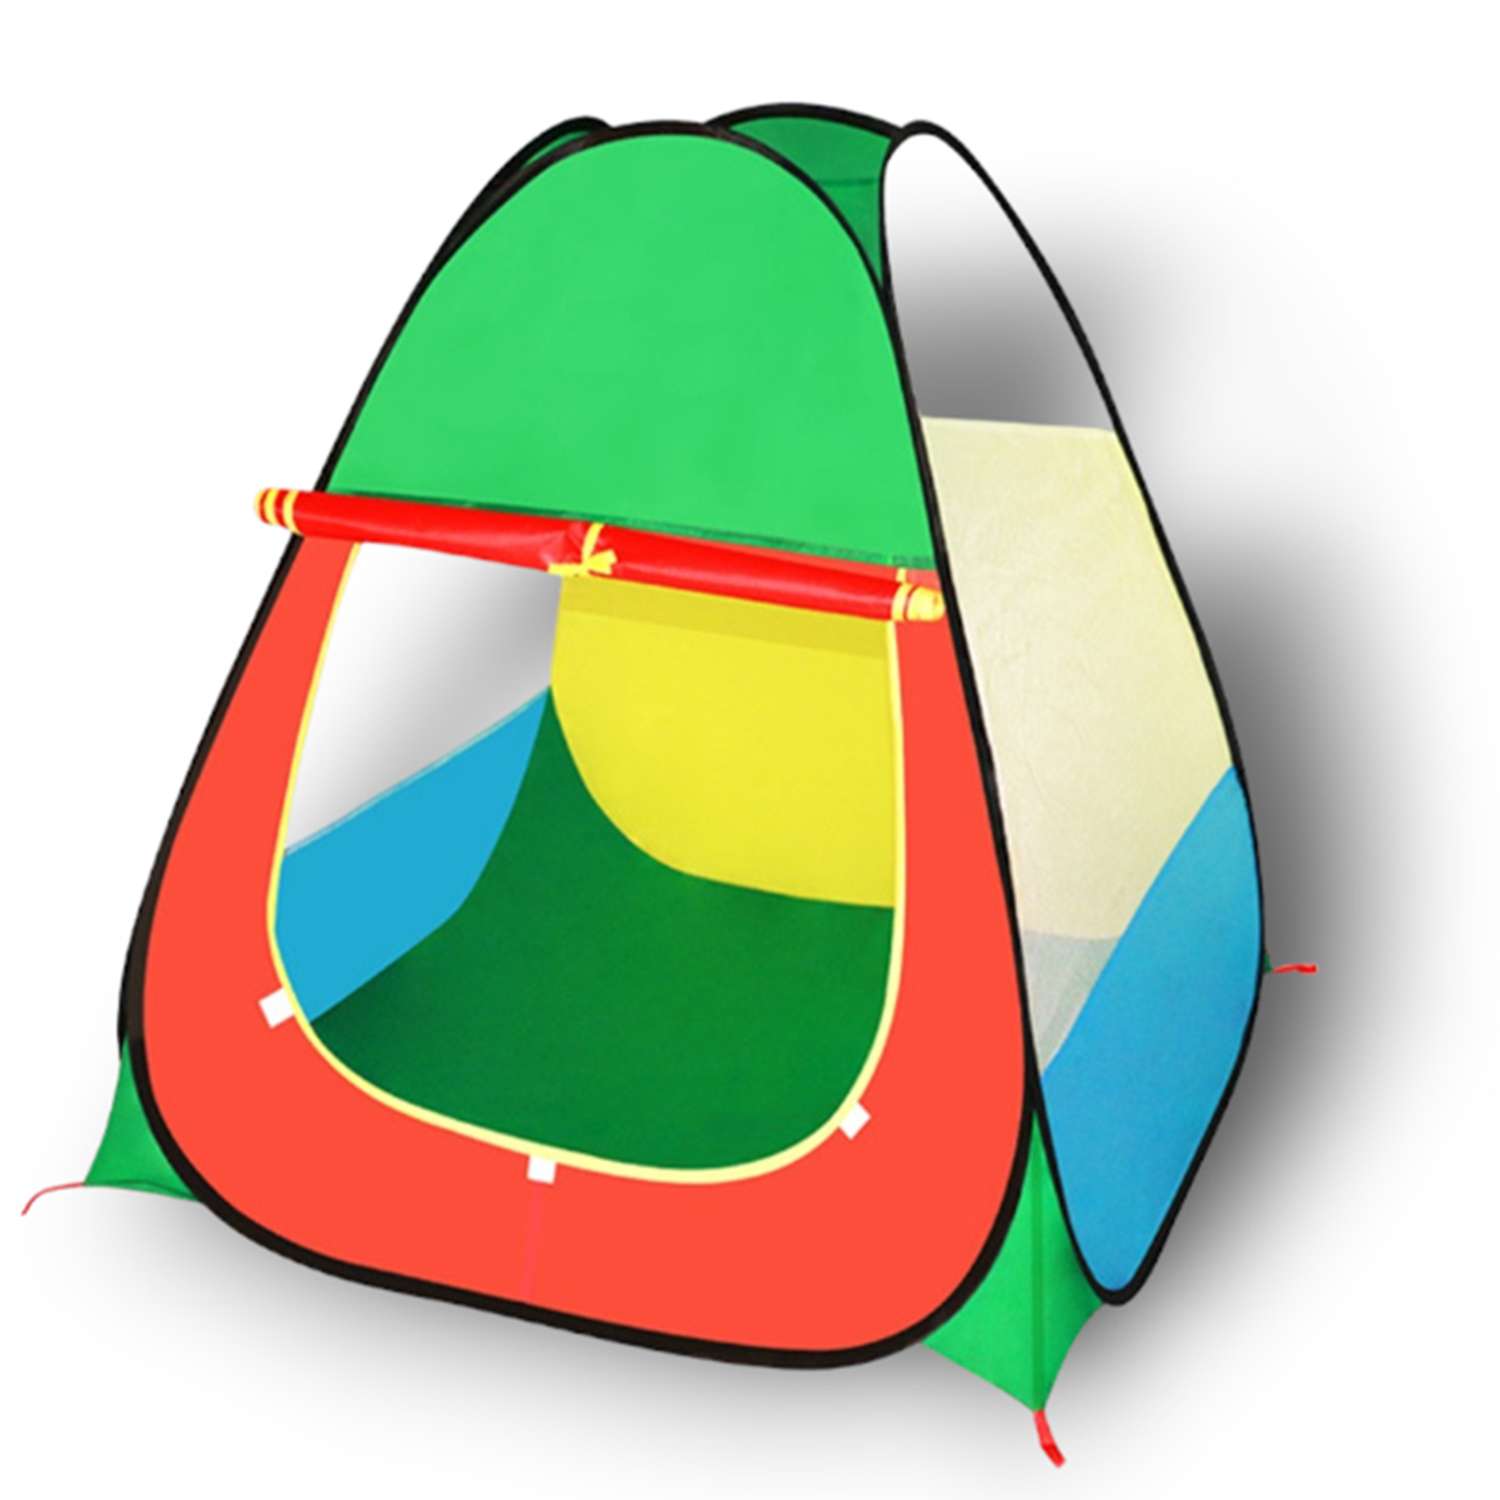 Игровая палатка-домик SHARKTOYS для ребенка - фото 1